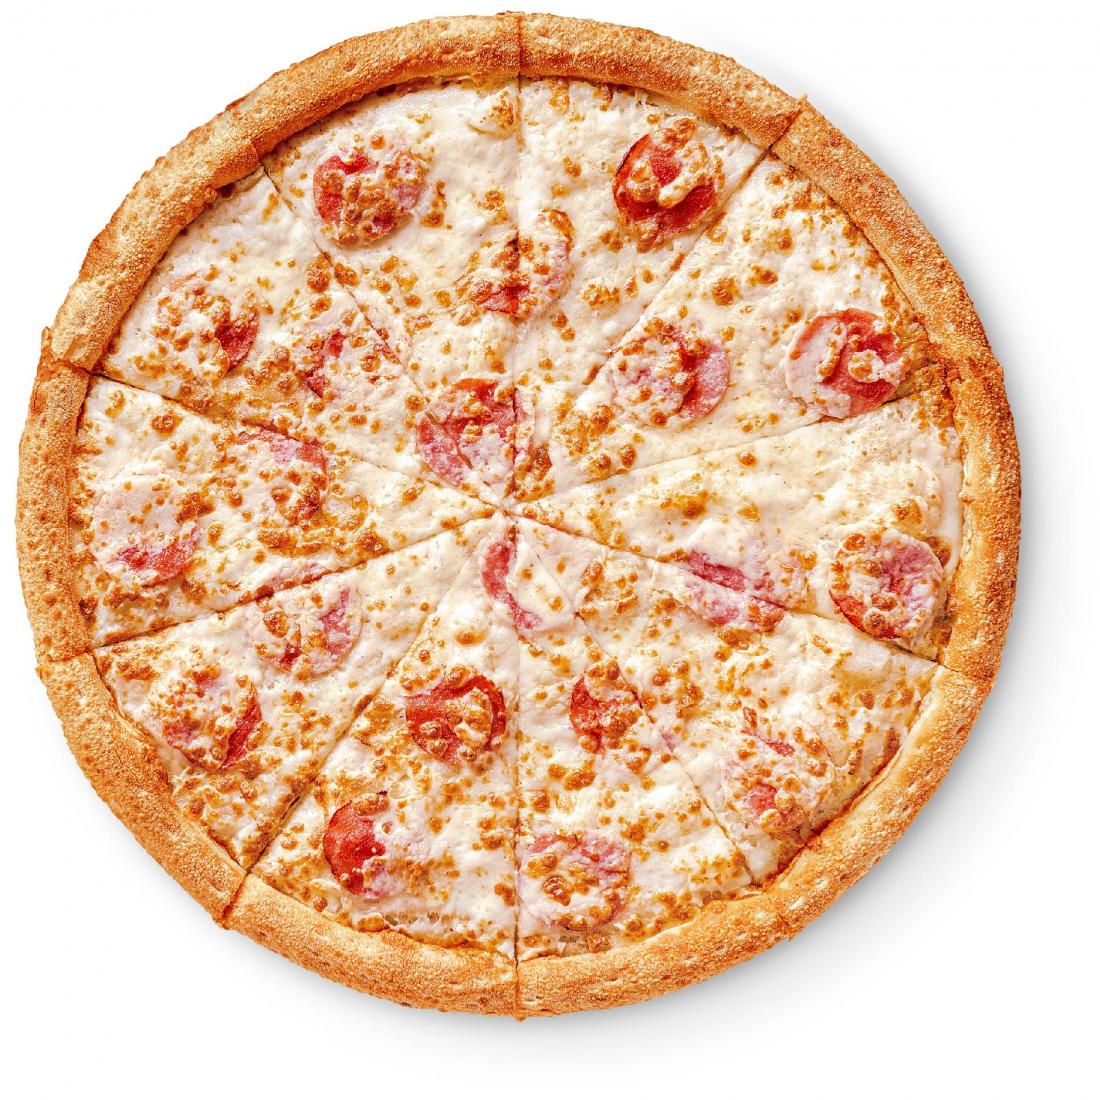 состав пепперони в додо пицца фото 64